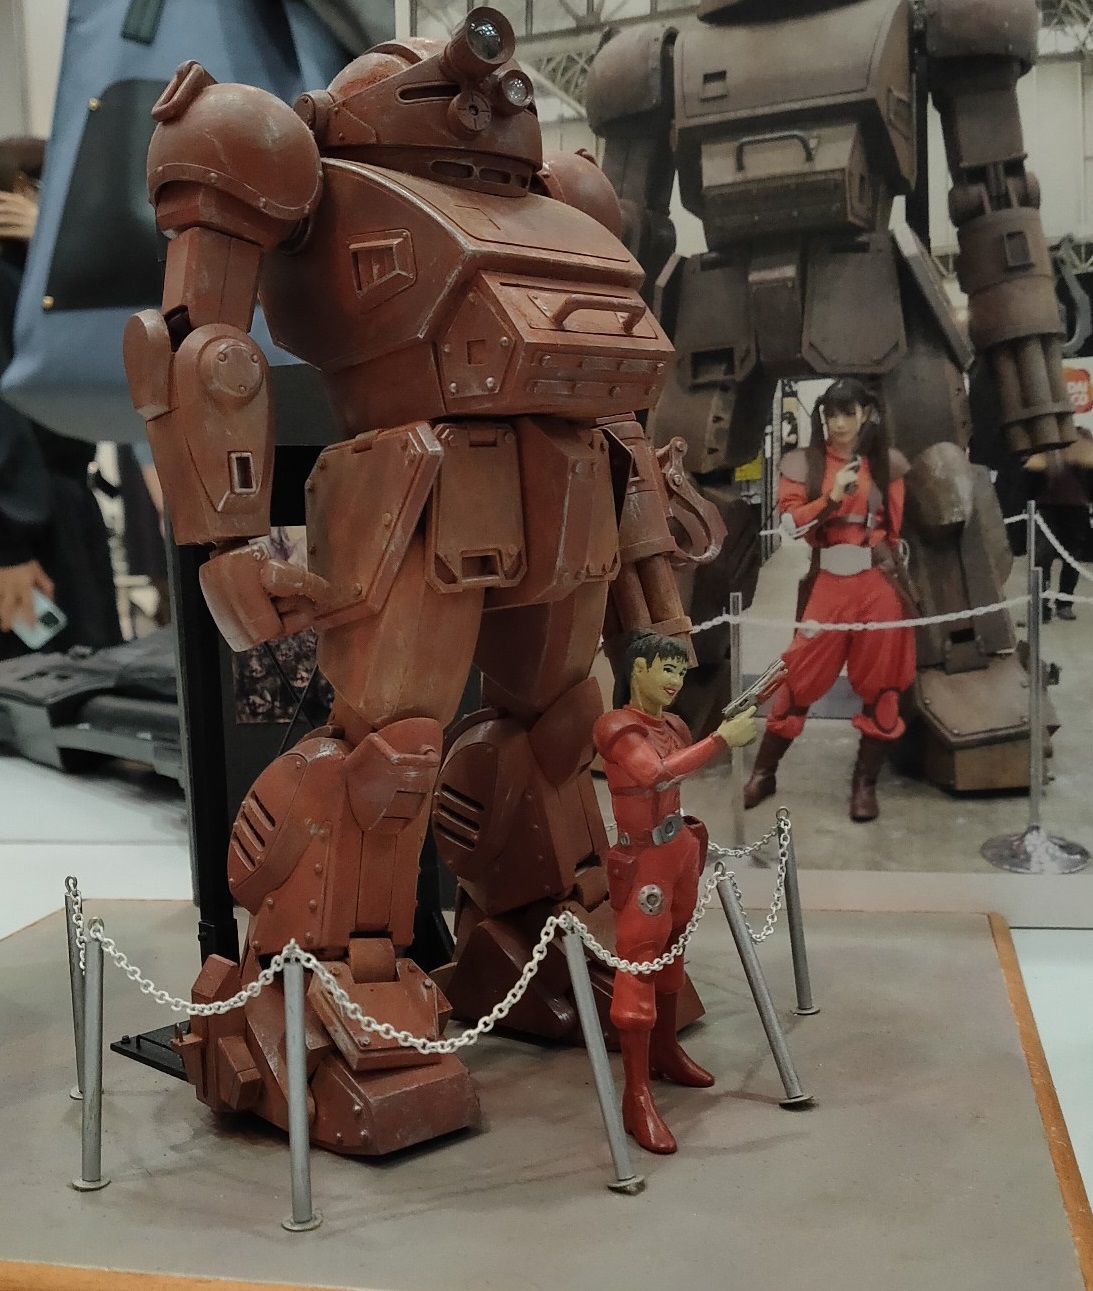 ボトムズ模型展示会「装甲騎兵祭」に行ってきた つってぃーのプラモブログ